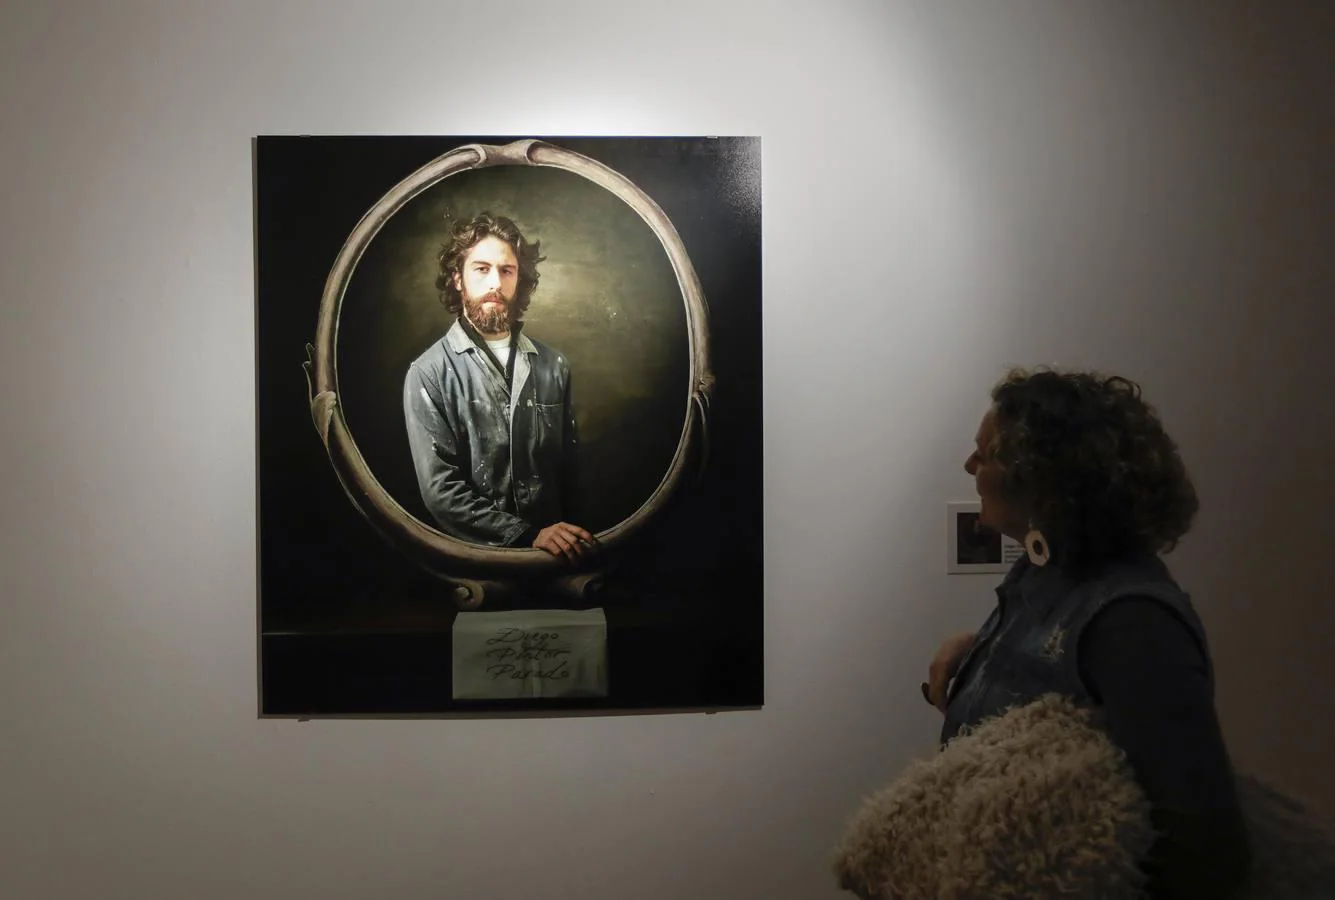 Una exposición revive lienzos barrocos de Murillo en fotografías de denuncia